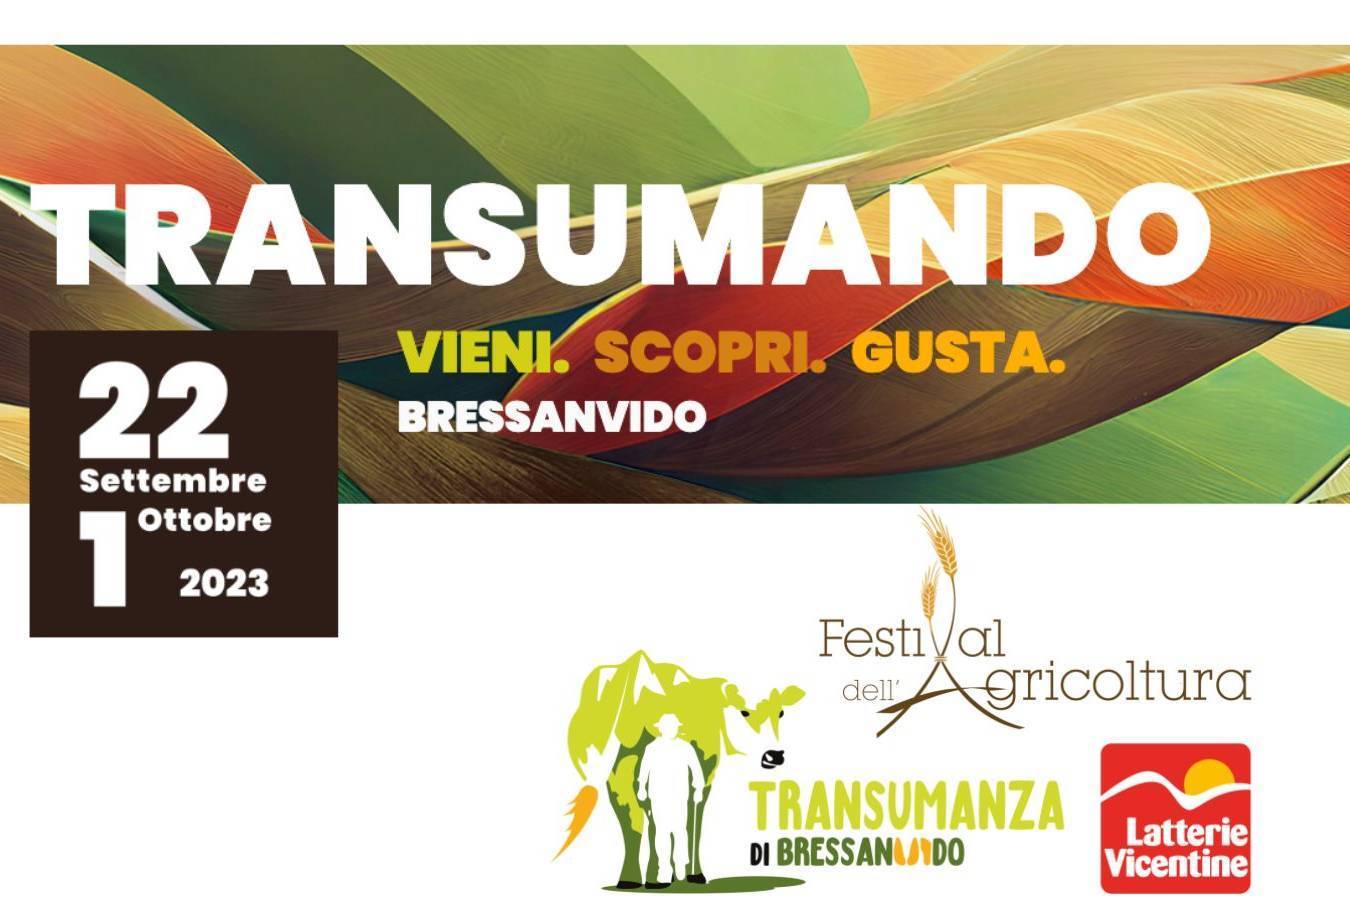 FESTIVAL DELL'AGRICOLTURA - TRANSUMANDO